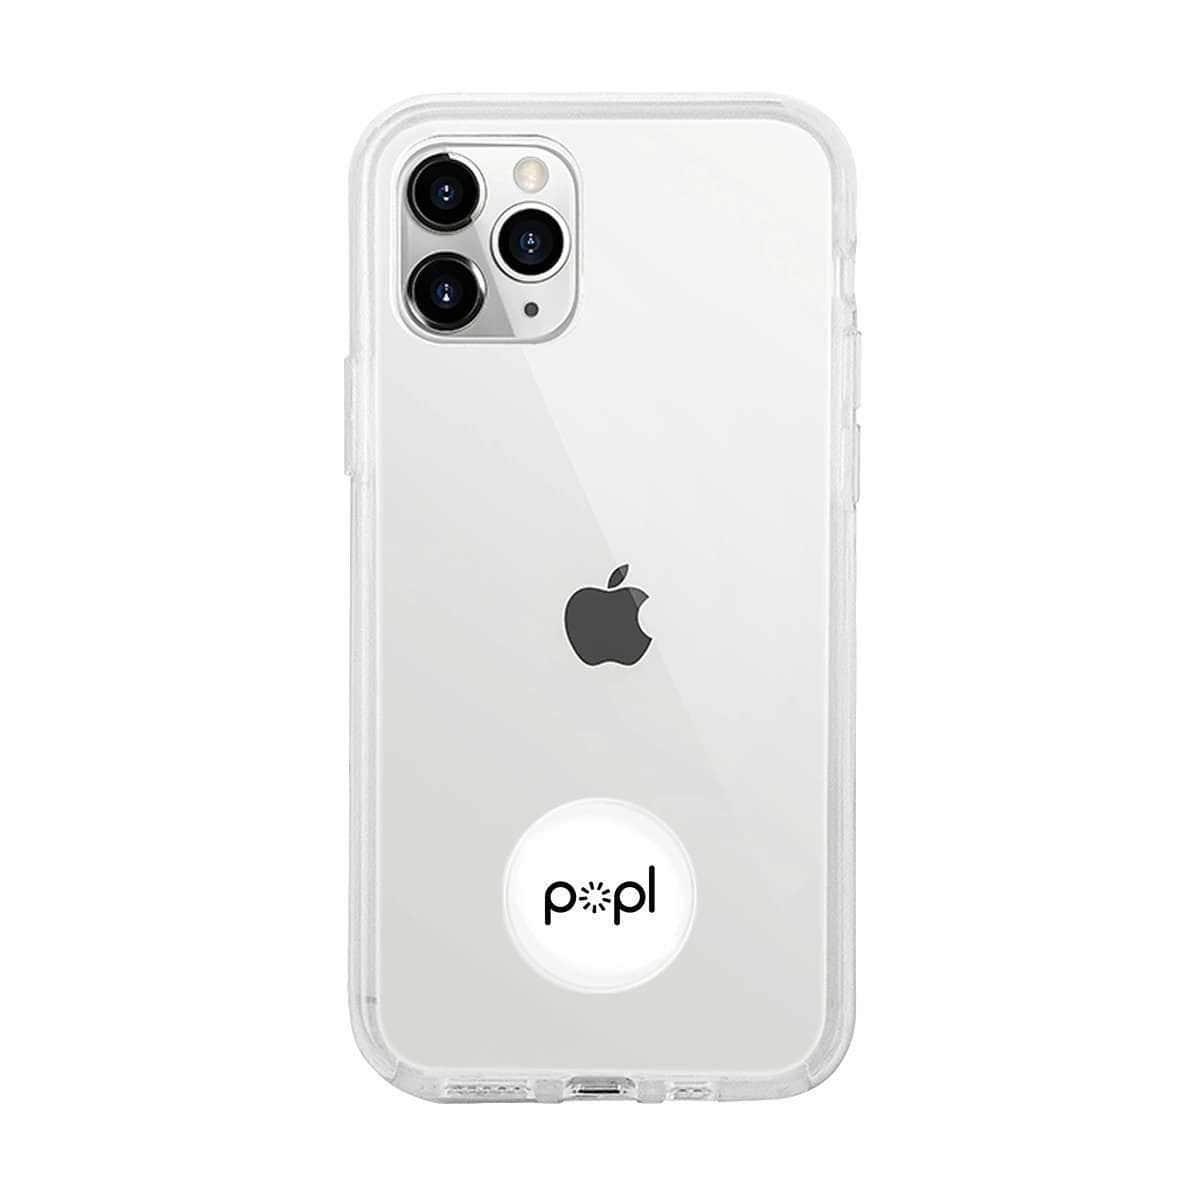 جهاز المشاركة الفورية Popl Instant Sharing Device - أبيض